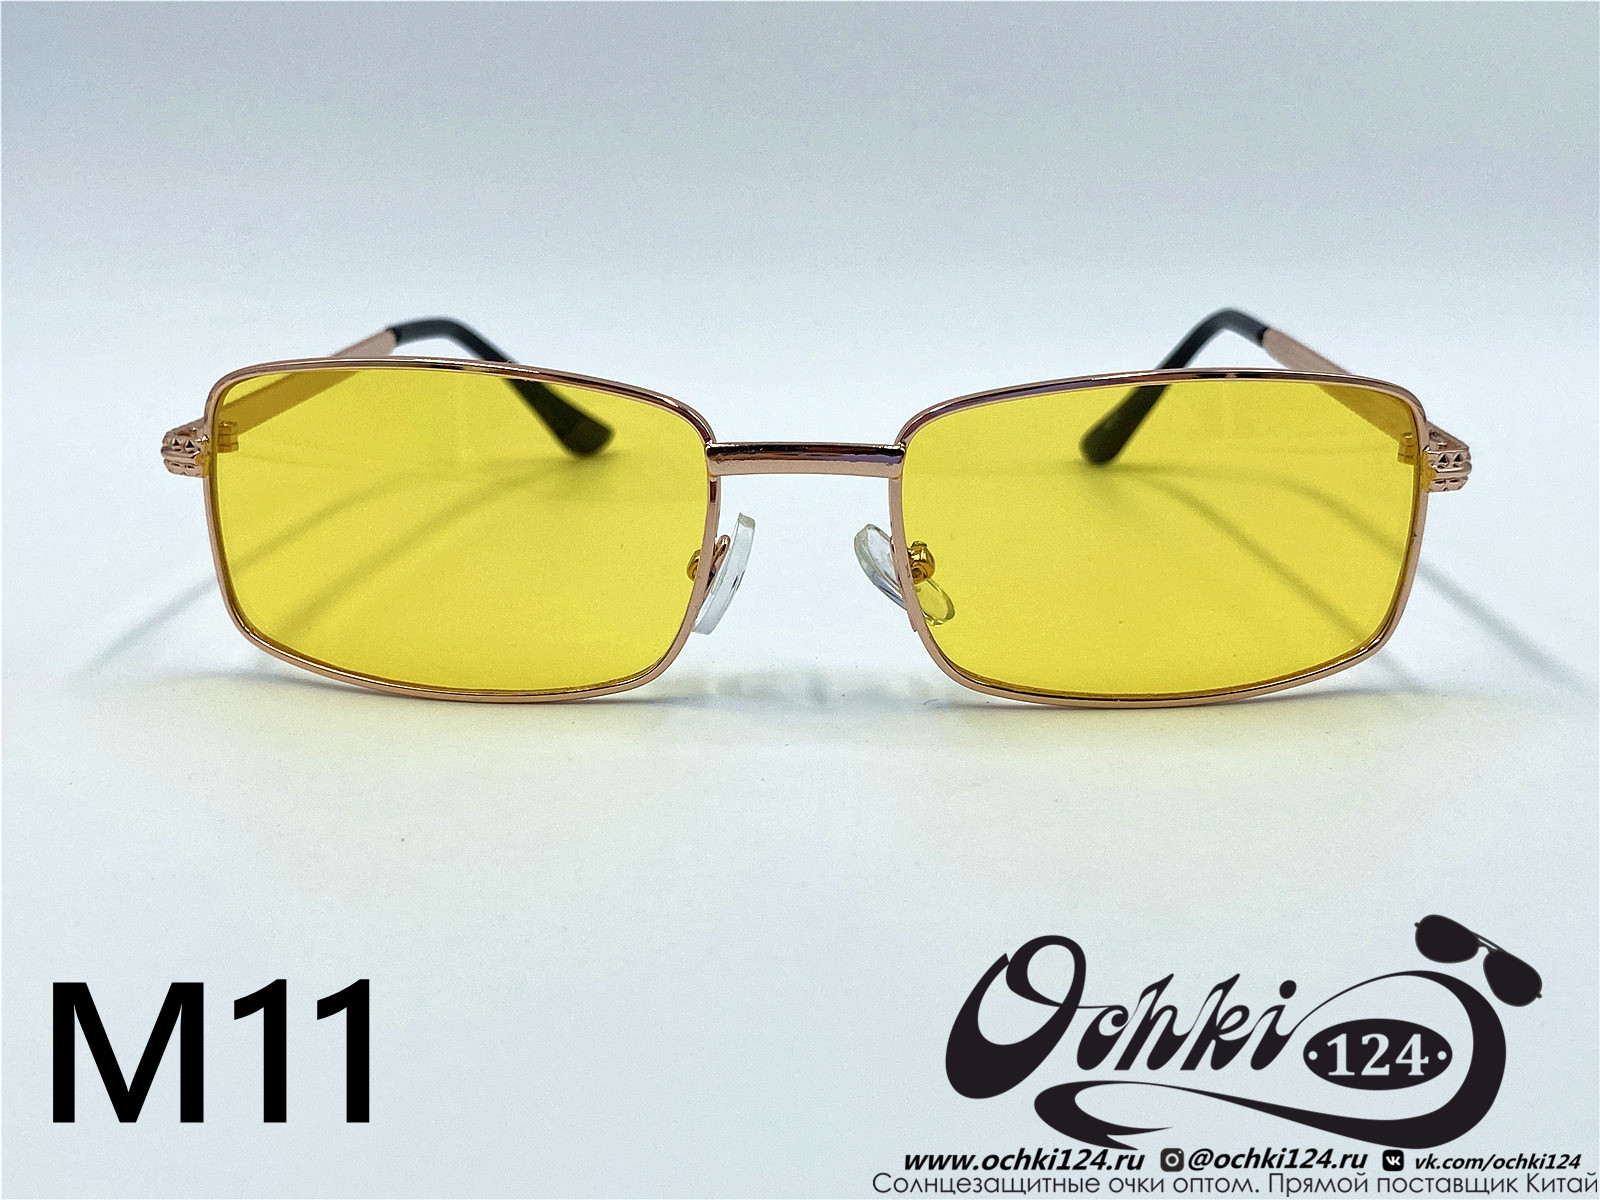  Солнцезащитные очки картинка 2022 Мужские Узкие и длинные KaiFeng M11-8 